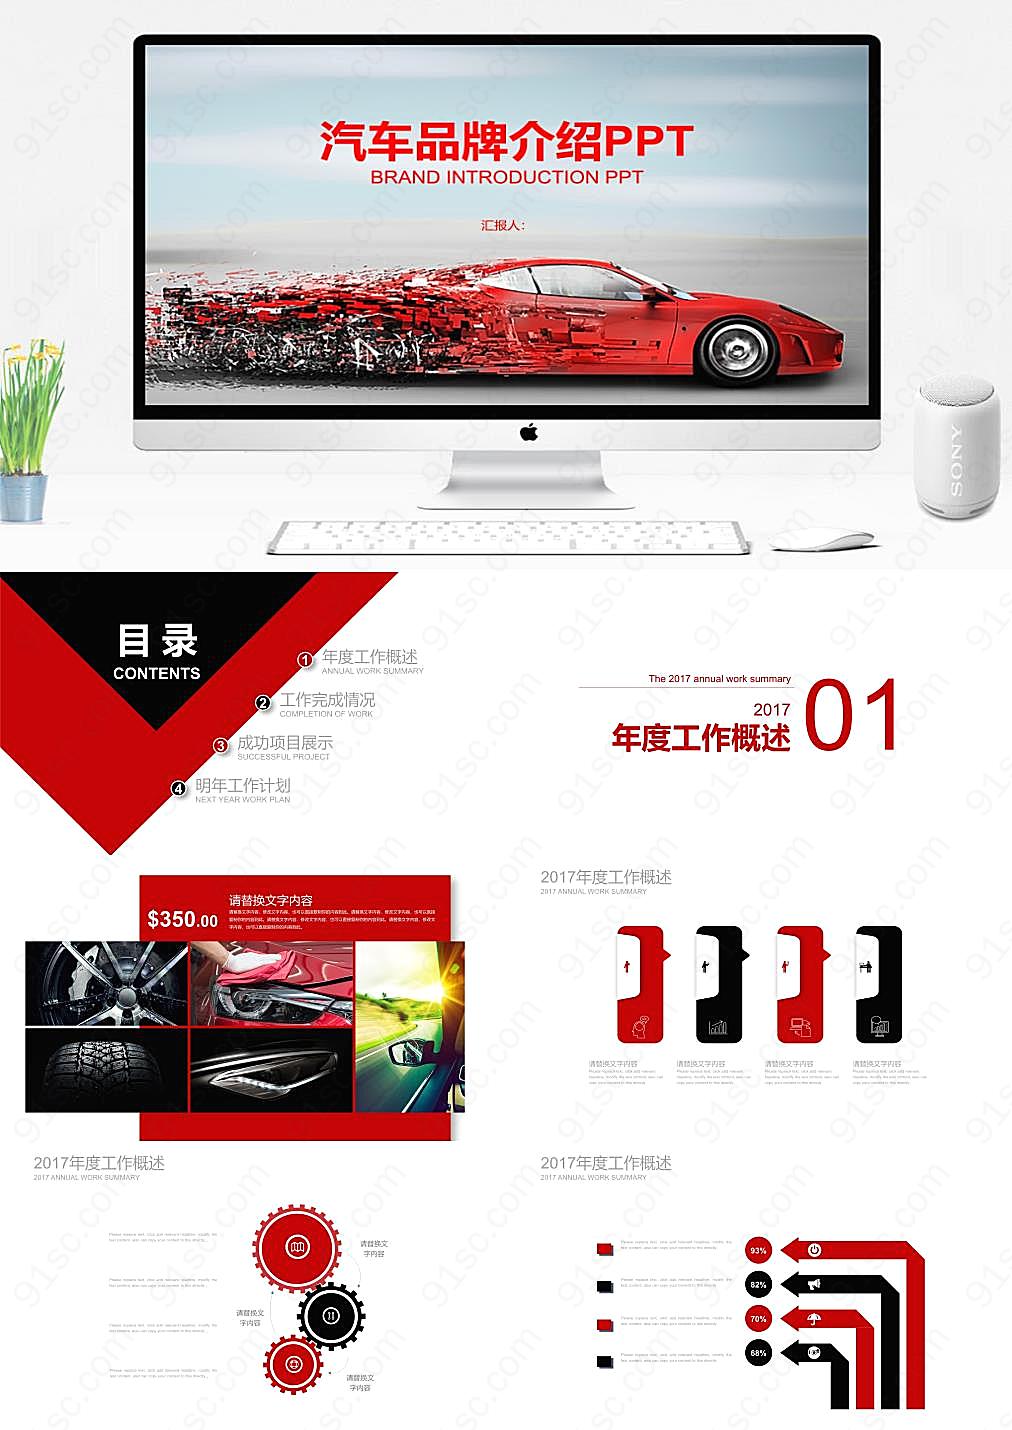 红色商务汽车品牌大气风格与特点介绍商务办公PPT模板下载